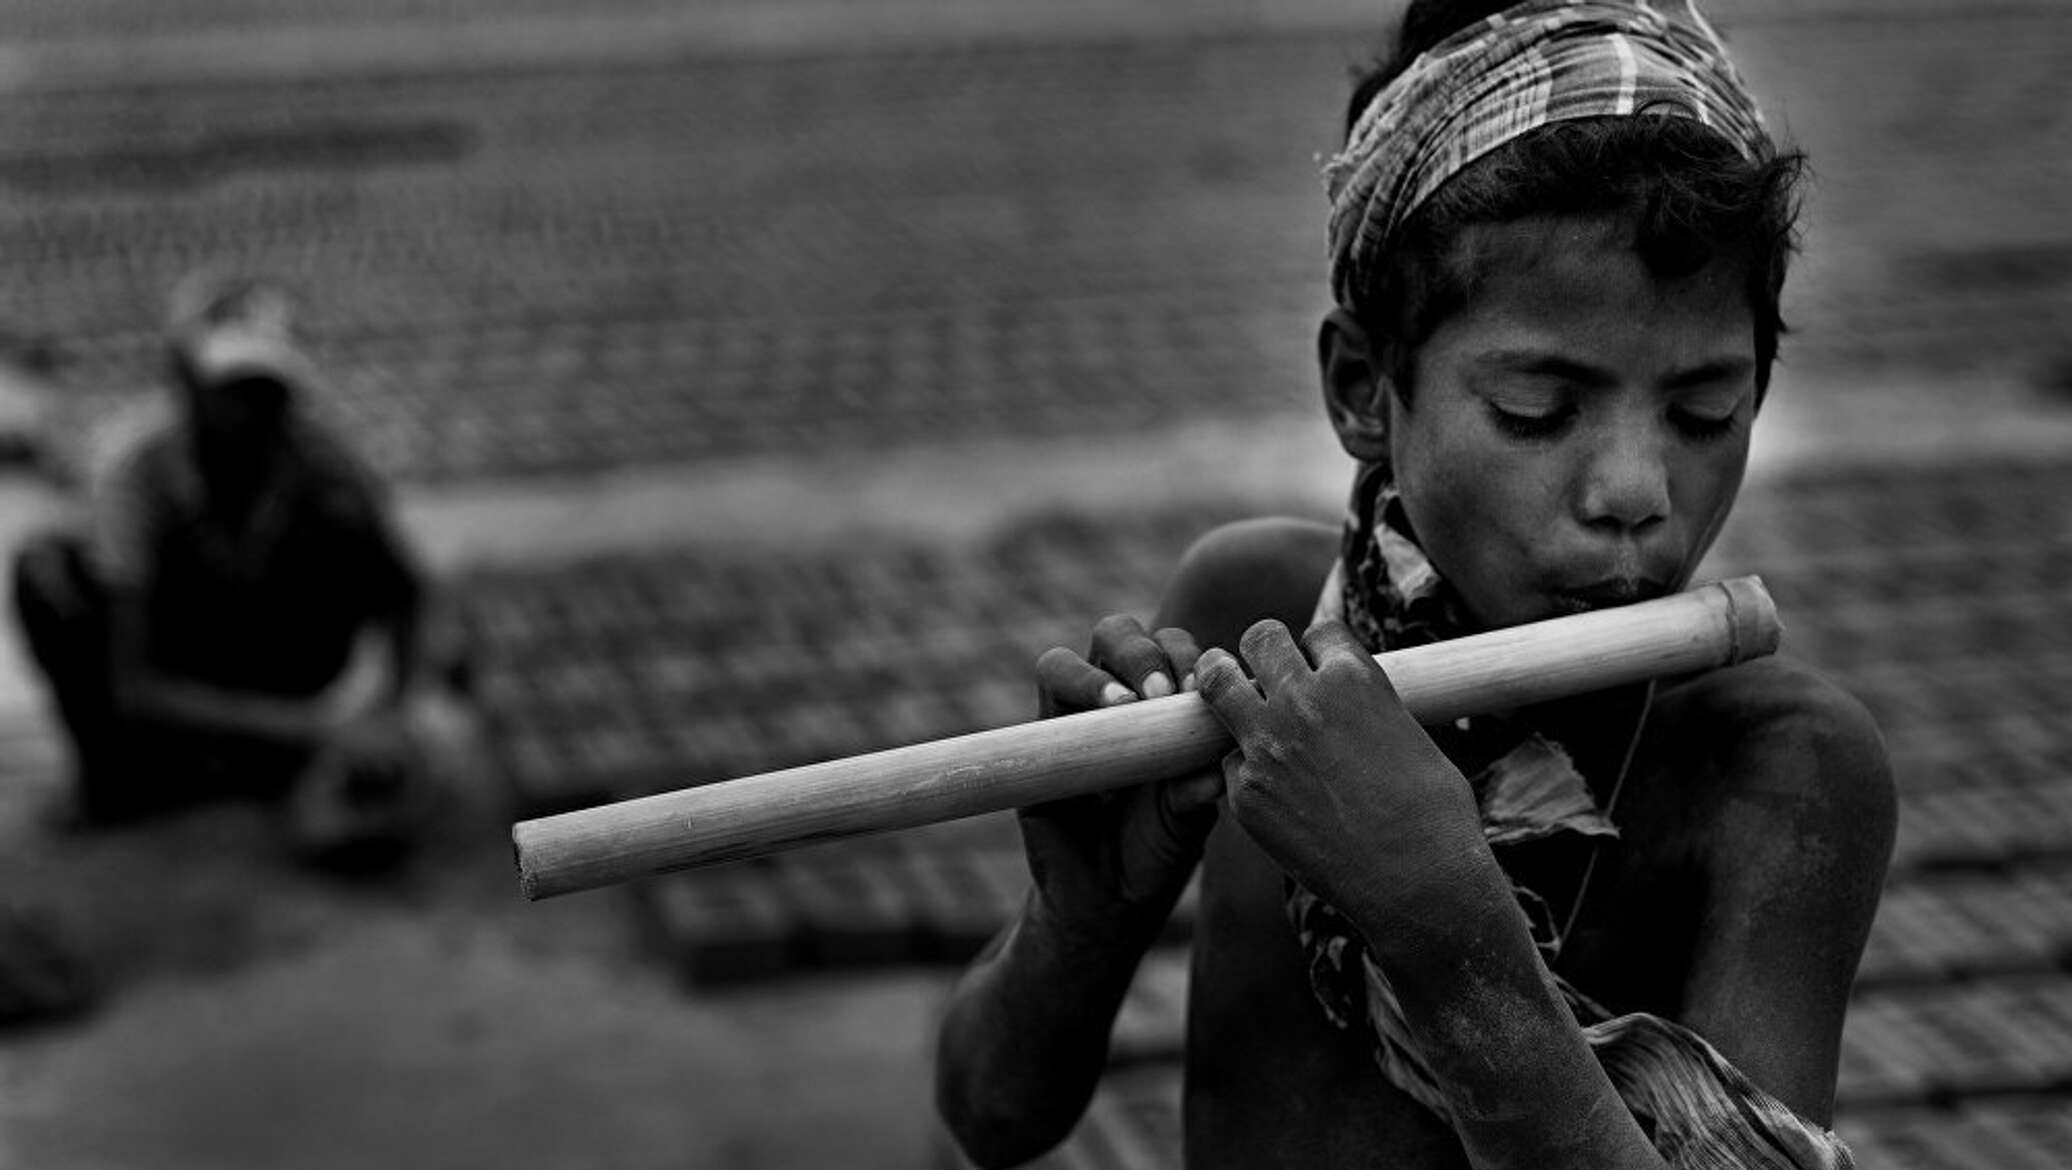 Playing flute. Флейта для детей. Пронзительные фотографии. Играет на флейте.